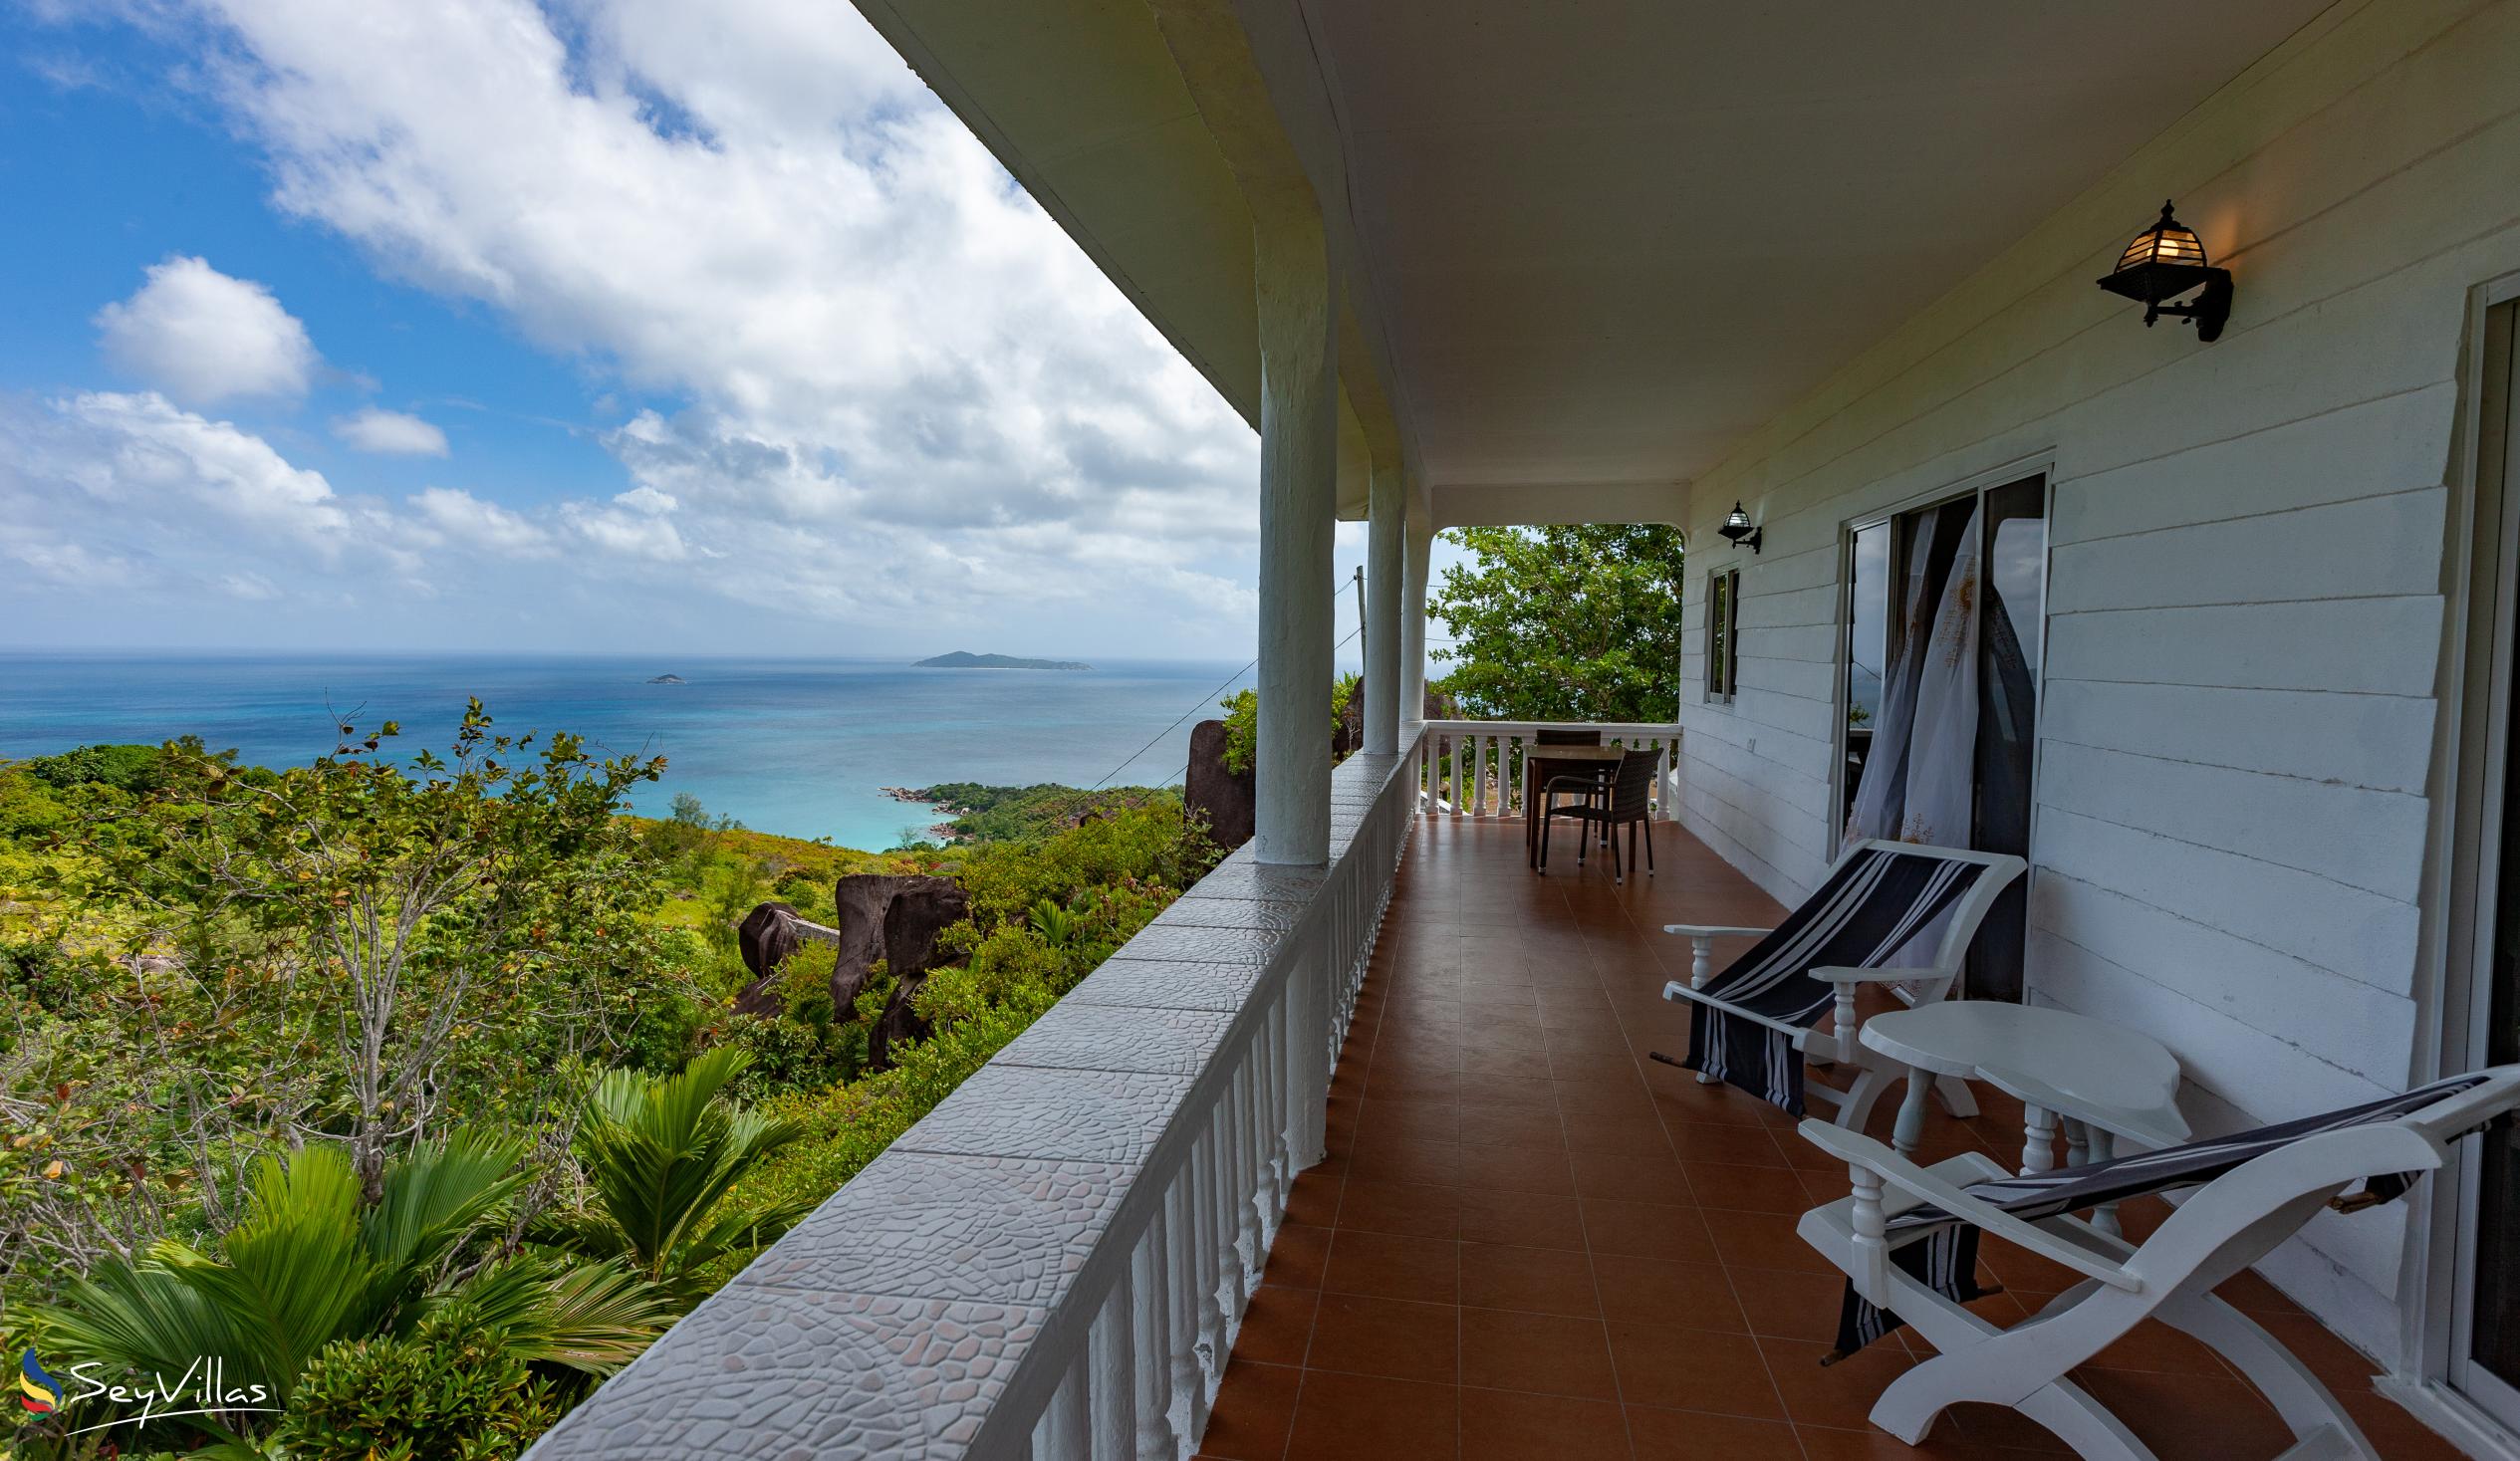 Foto 19: Maison du Soleil - Aussenbereich - Praslin (Seychellen)